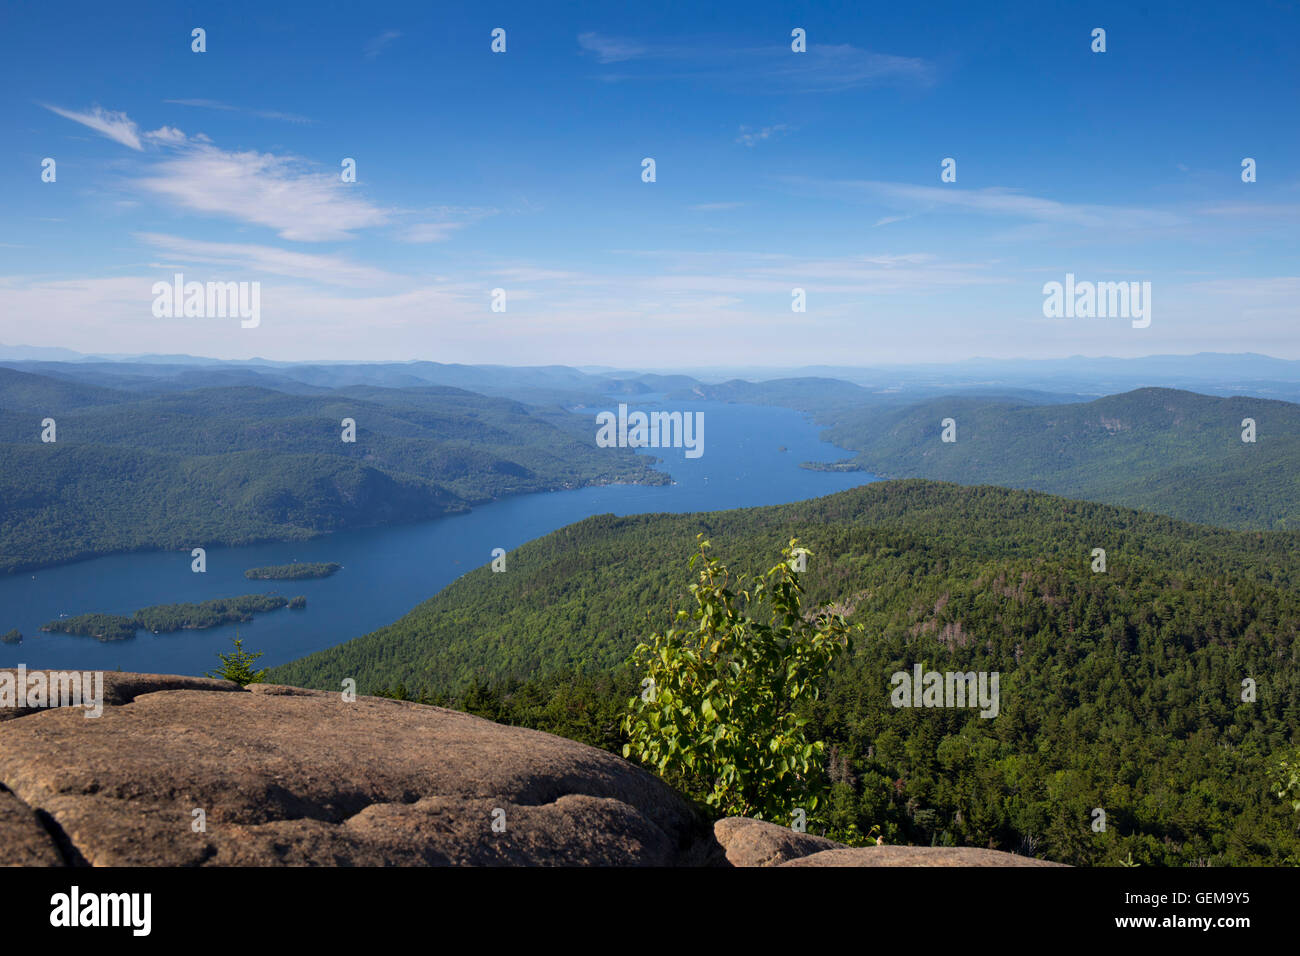 Sommet de la montagne noire et surplombant le lac George Adirondack NY USA Banque D'Images